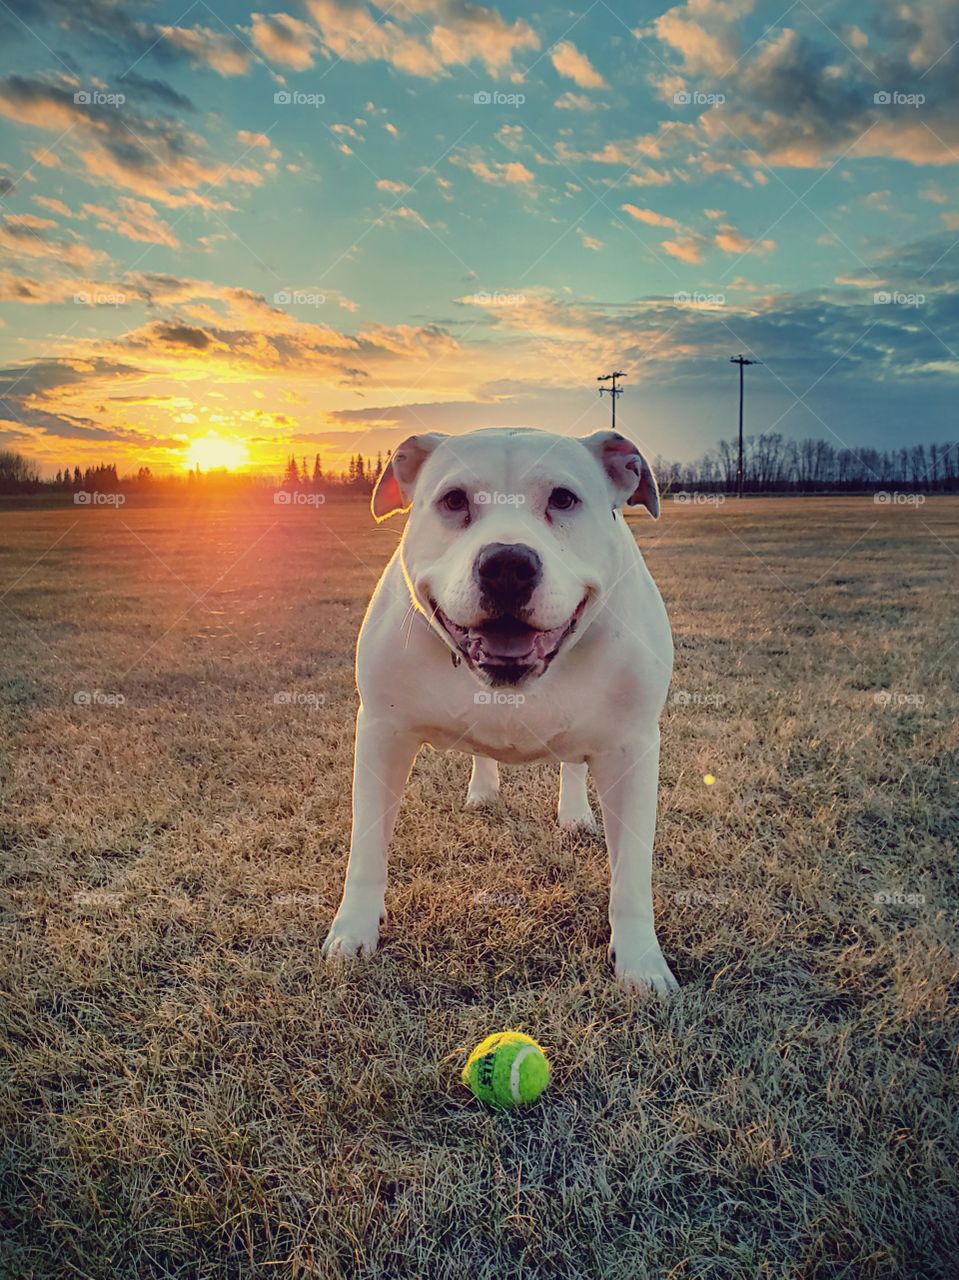 pitbull playing ball and sunset